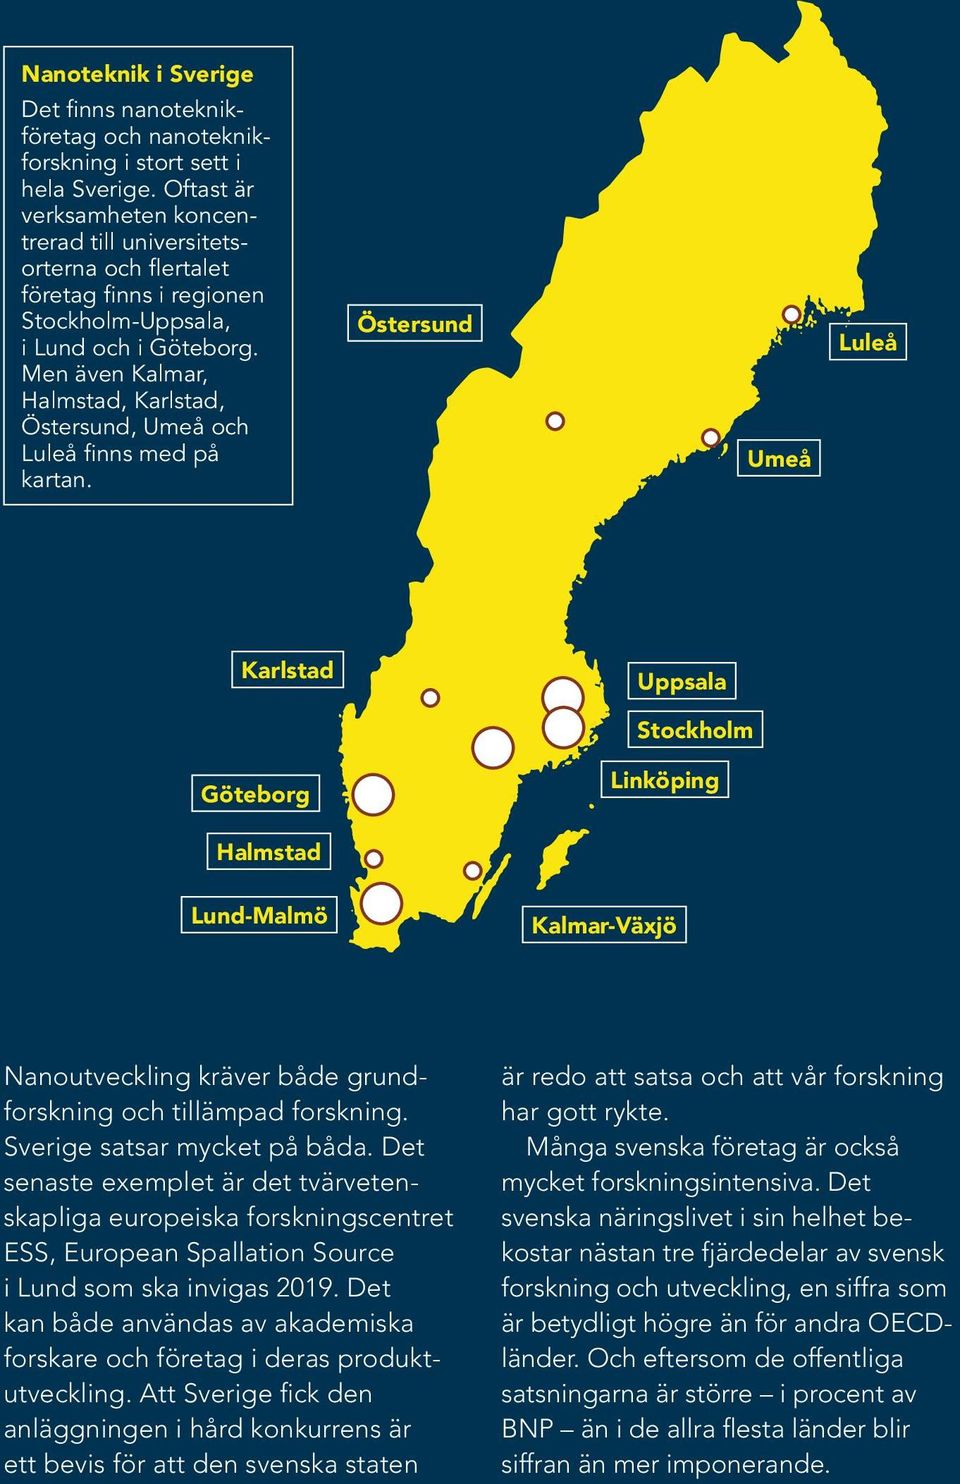 Men även Kalmar, Halmstad, Karlstad, Östersund, Umeå och Luleå finns med på kartan.